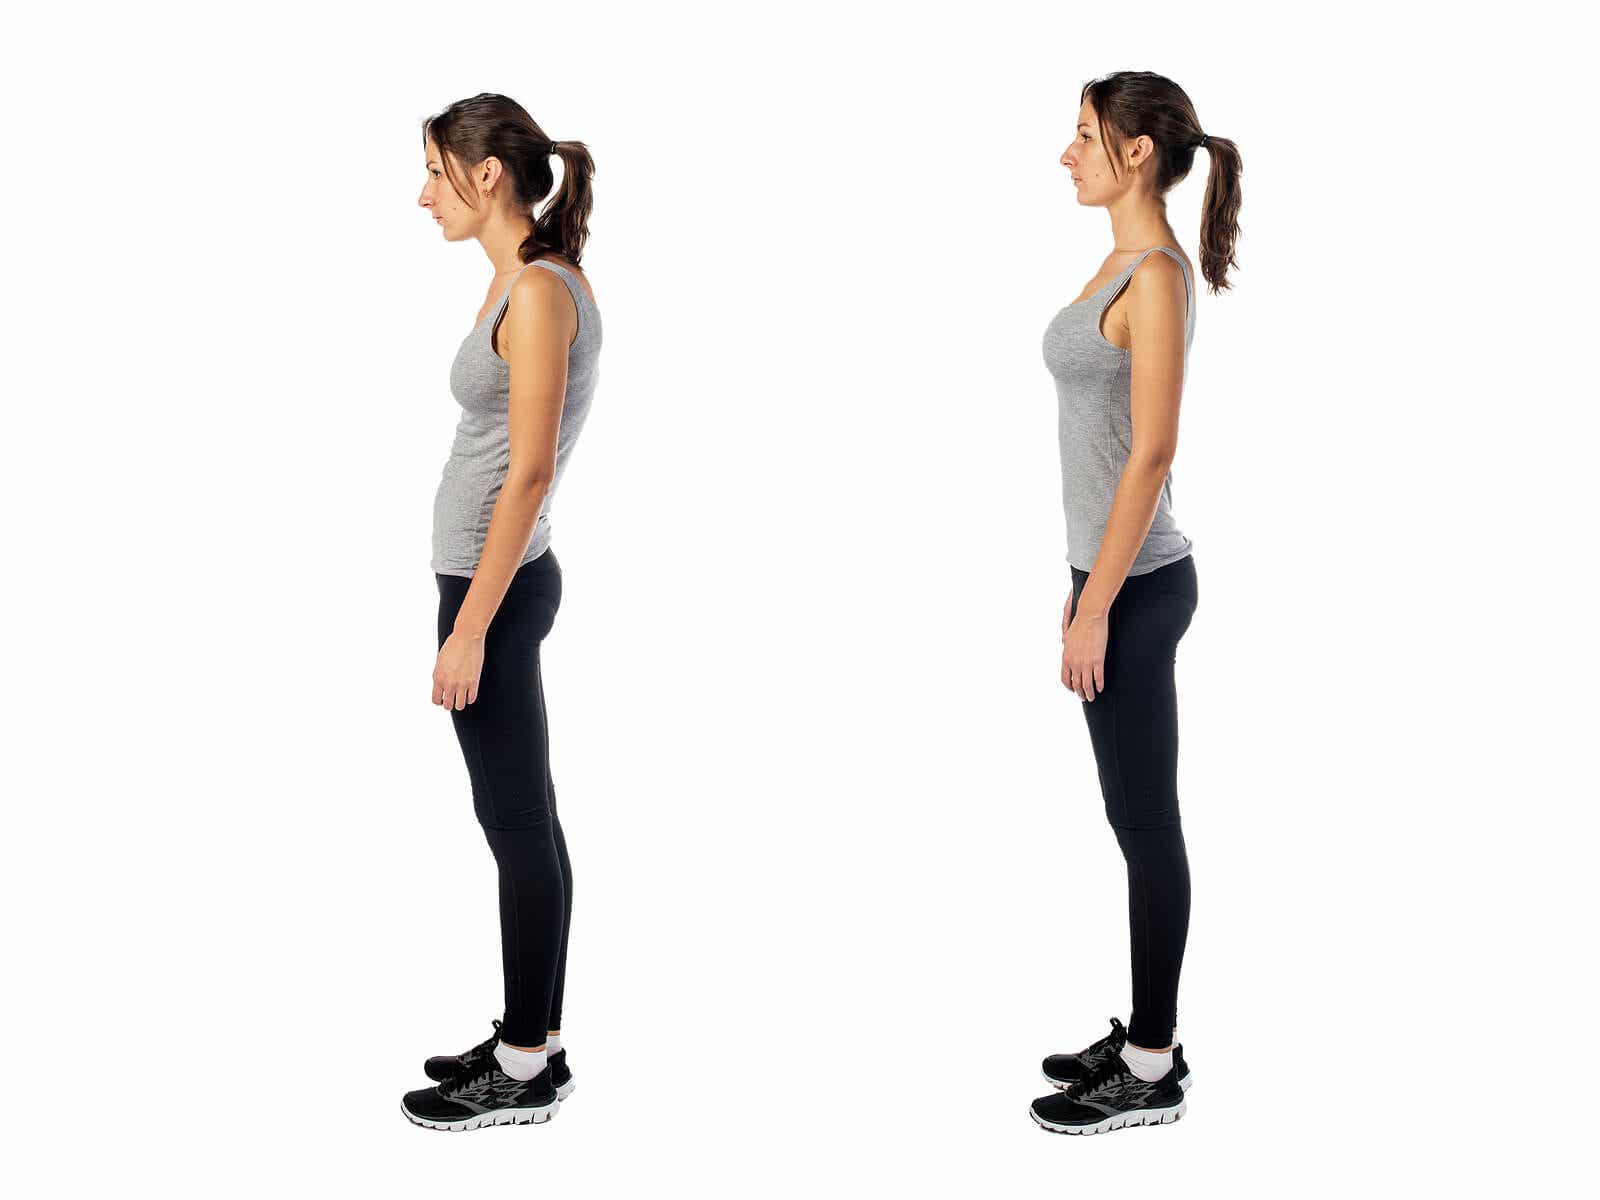 Se recomienda mejorar la postura corporal para evitar dolores.